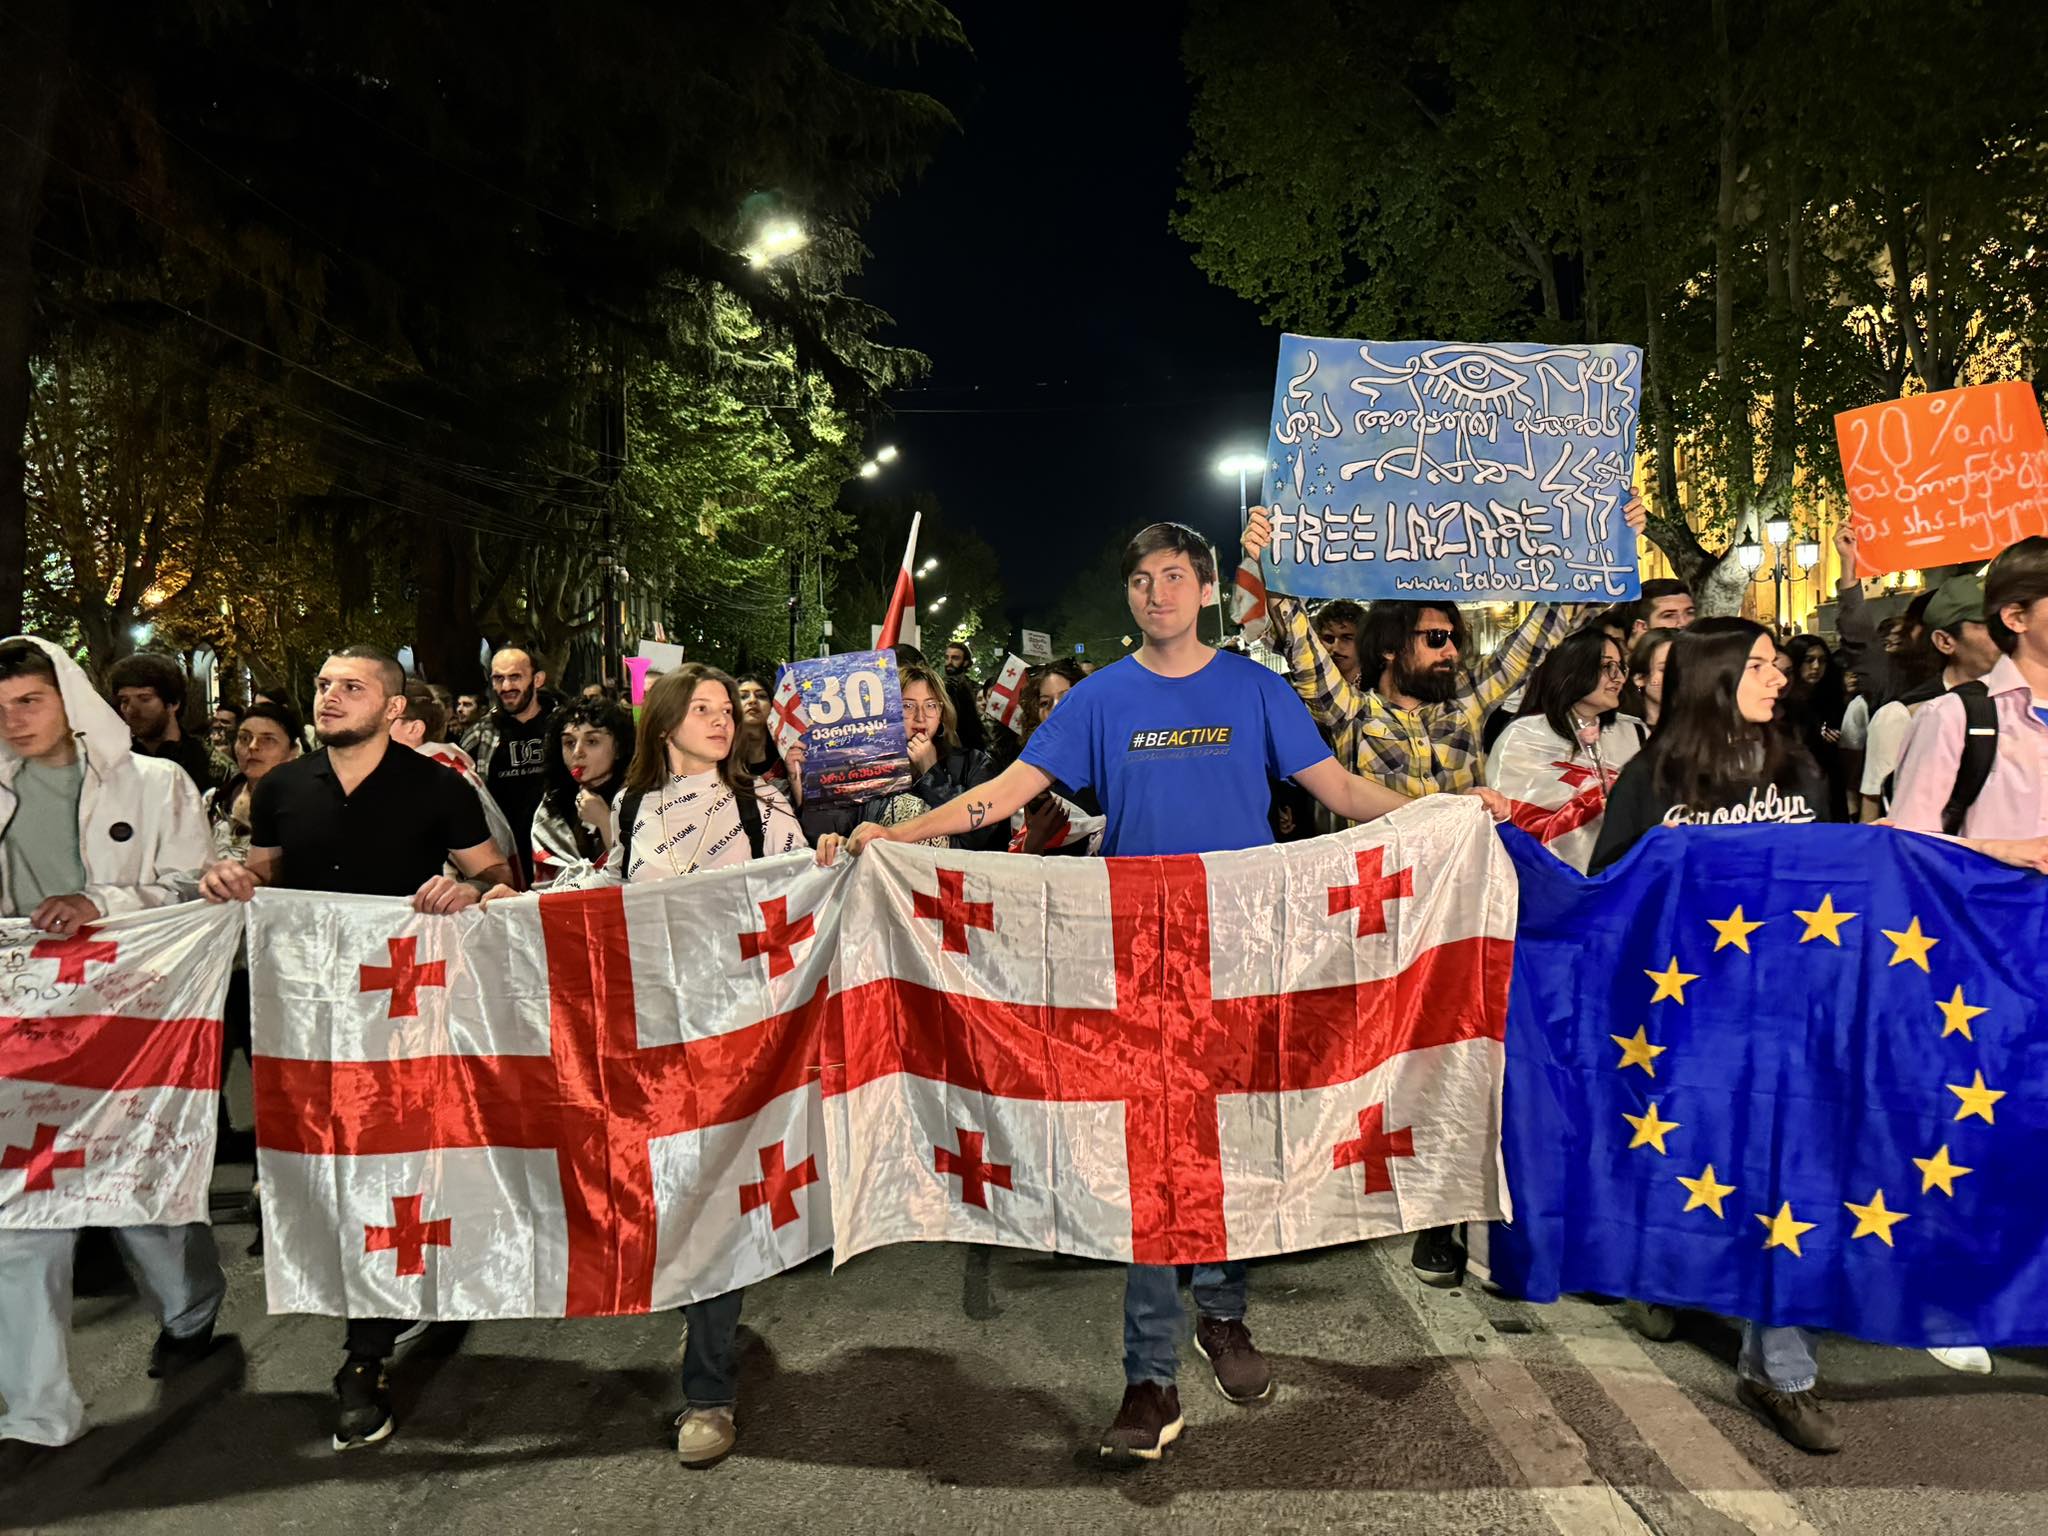 439432691 400883482830464 200005884482576157 n новости акция протеста в тбилиси, Грузия-ЕС, закон об иноагентах в грузии, представительство ЕС в Грузии, протестное шествие